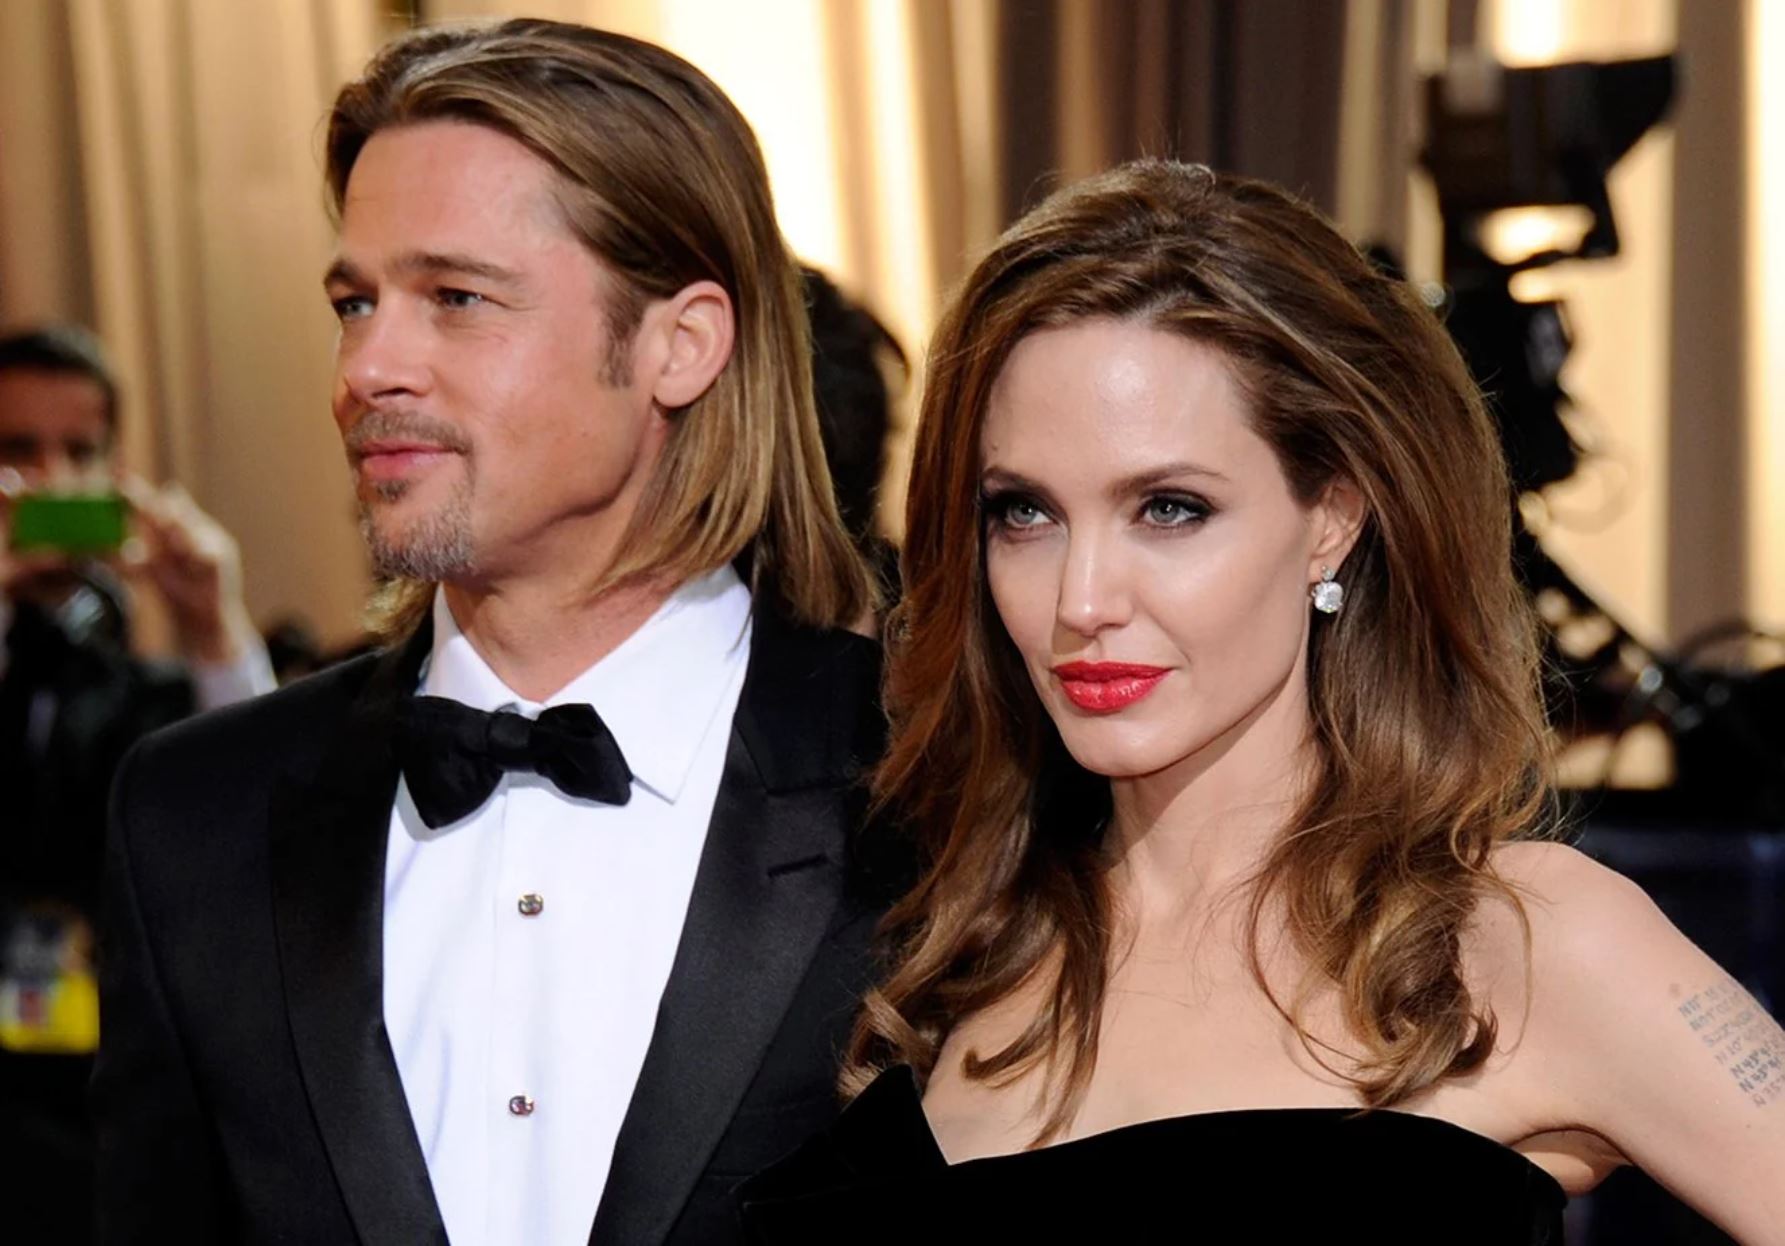 Angelina Jolie malmenée par Brad Pitt dans leur jet privé ? Les détails de son récit dévoilés !